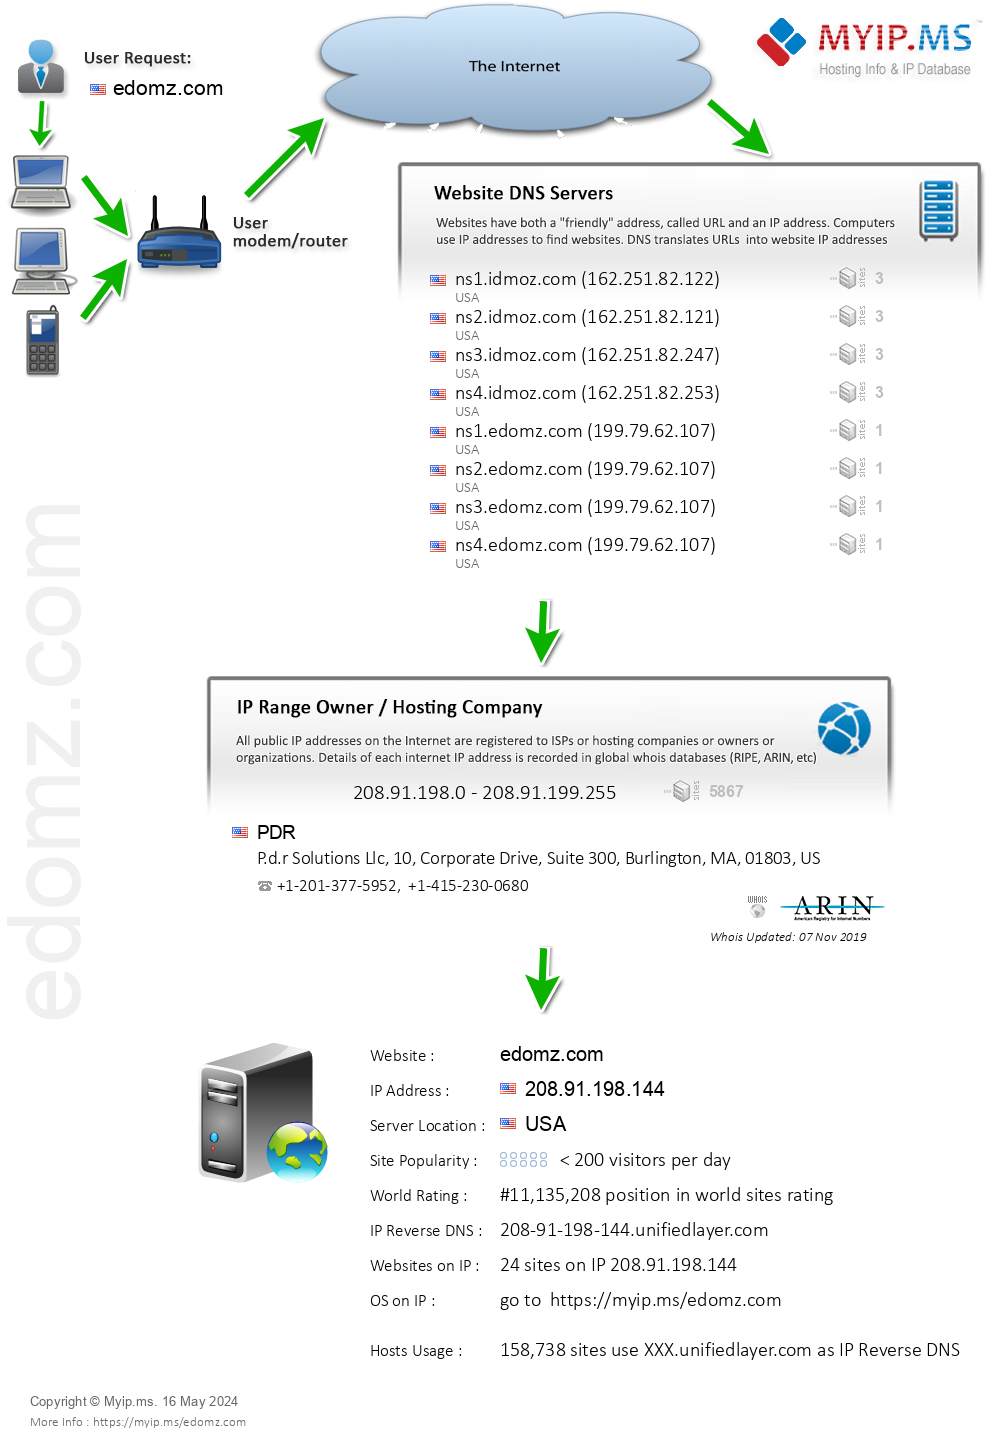 Edomz.com - Website Hosting Visual IP Diagram